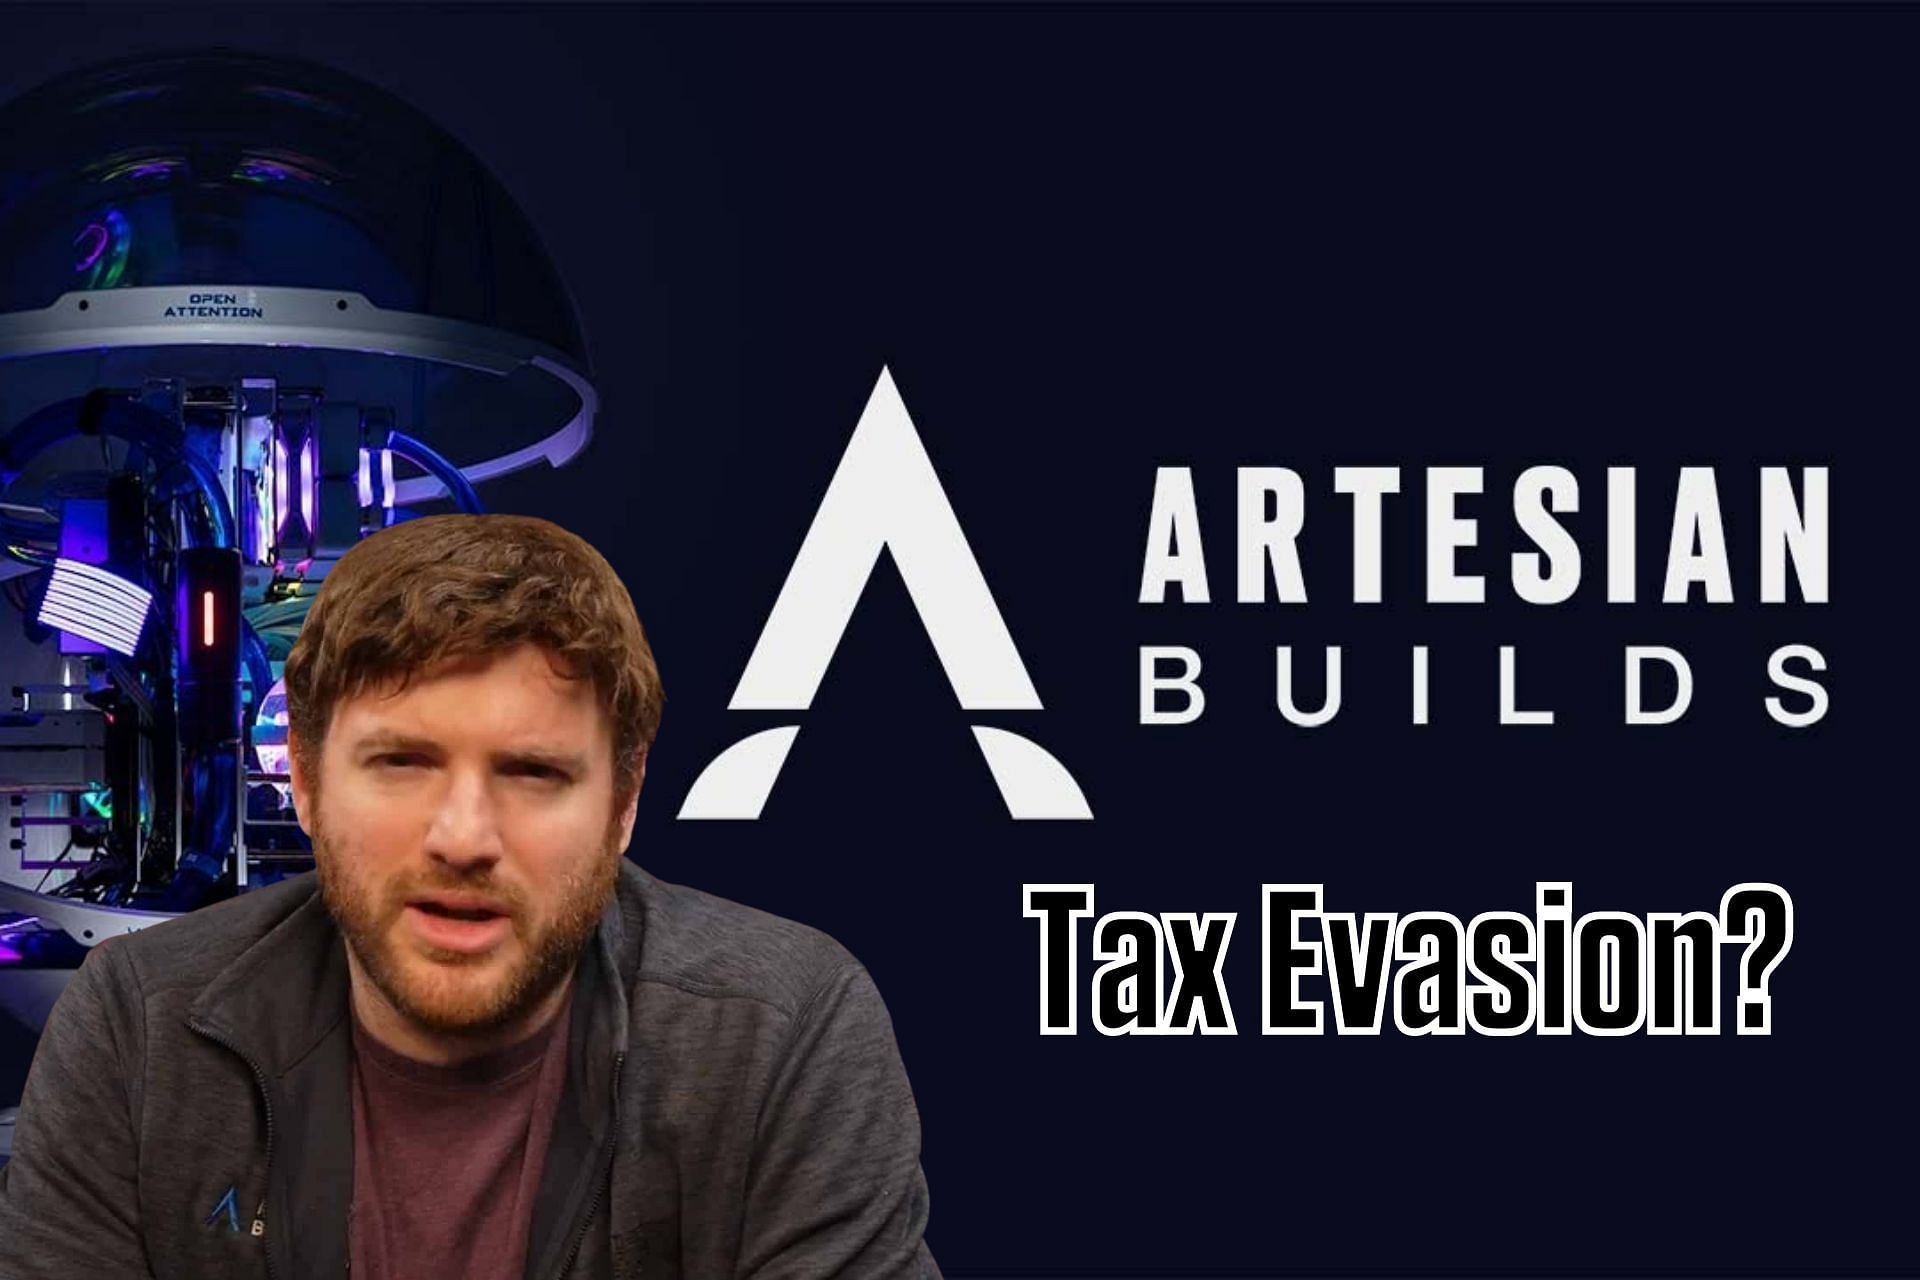 Dramat Artesian Builds trwa, gdy dyrektor generalny Noah Katz zostaje oskarżony o uchylanie się od płacenia podatków po kontrowersji dotyczącej darowizn